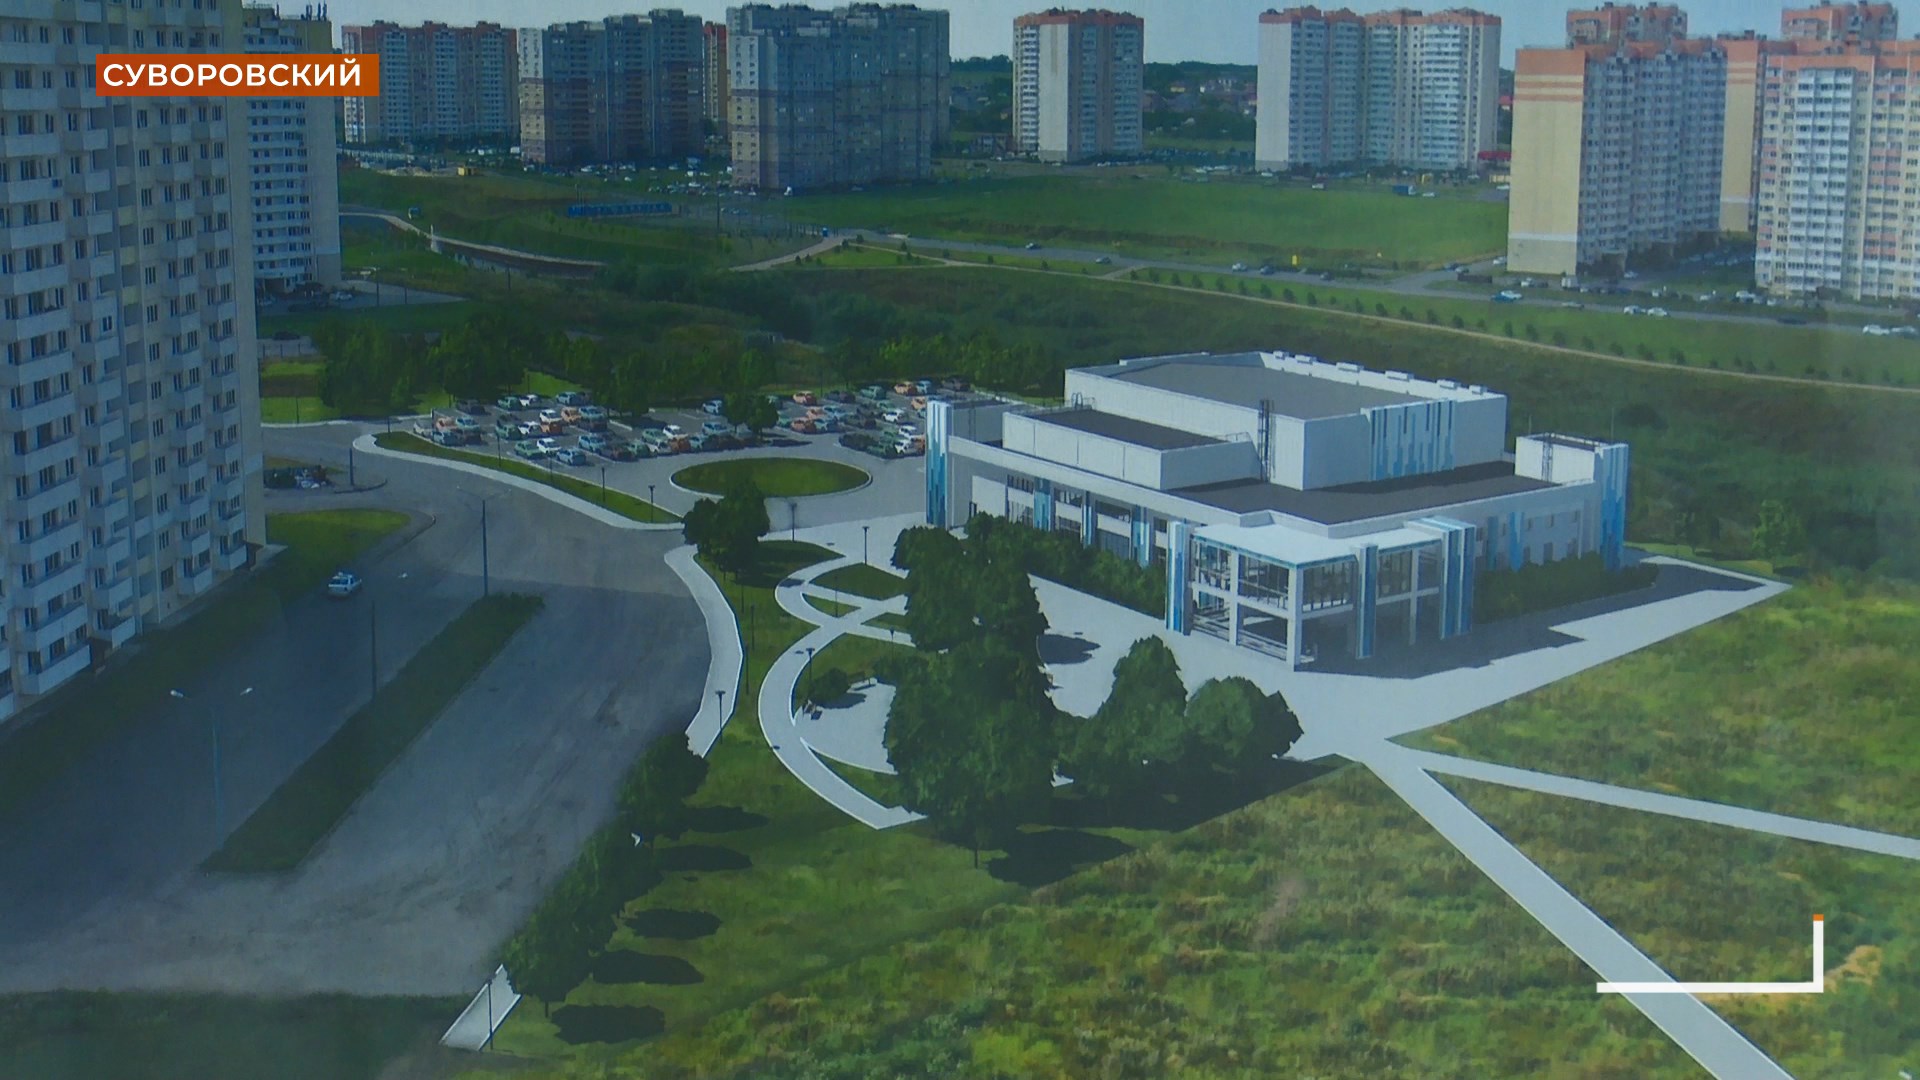 20-25 многоквартирных домов планируется сдать до 25-го года в Суворовском